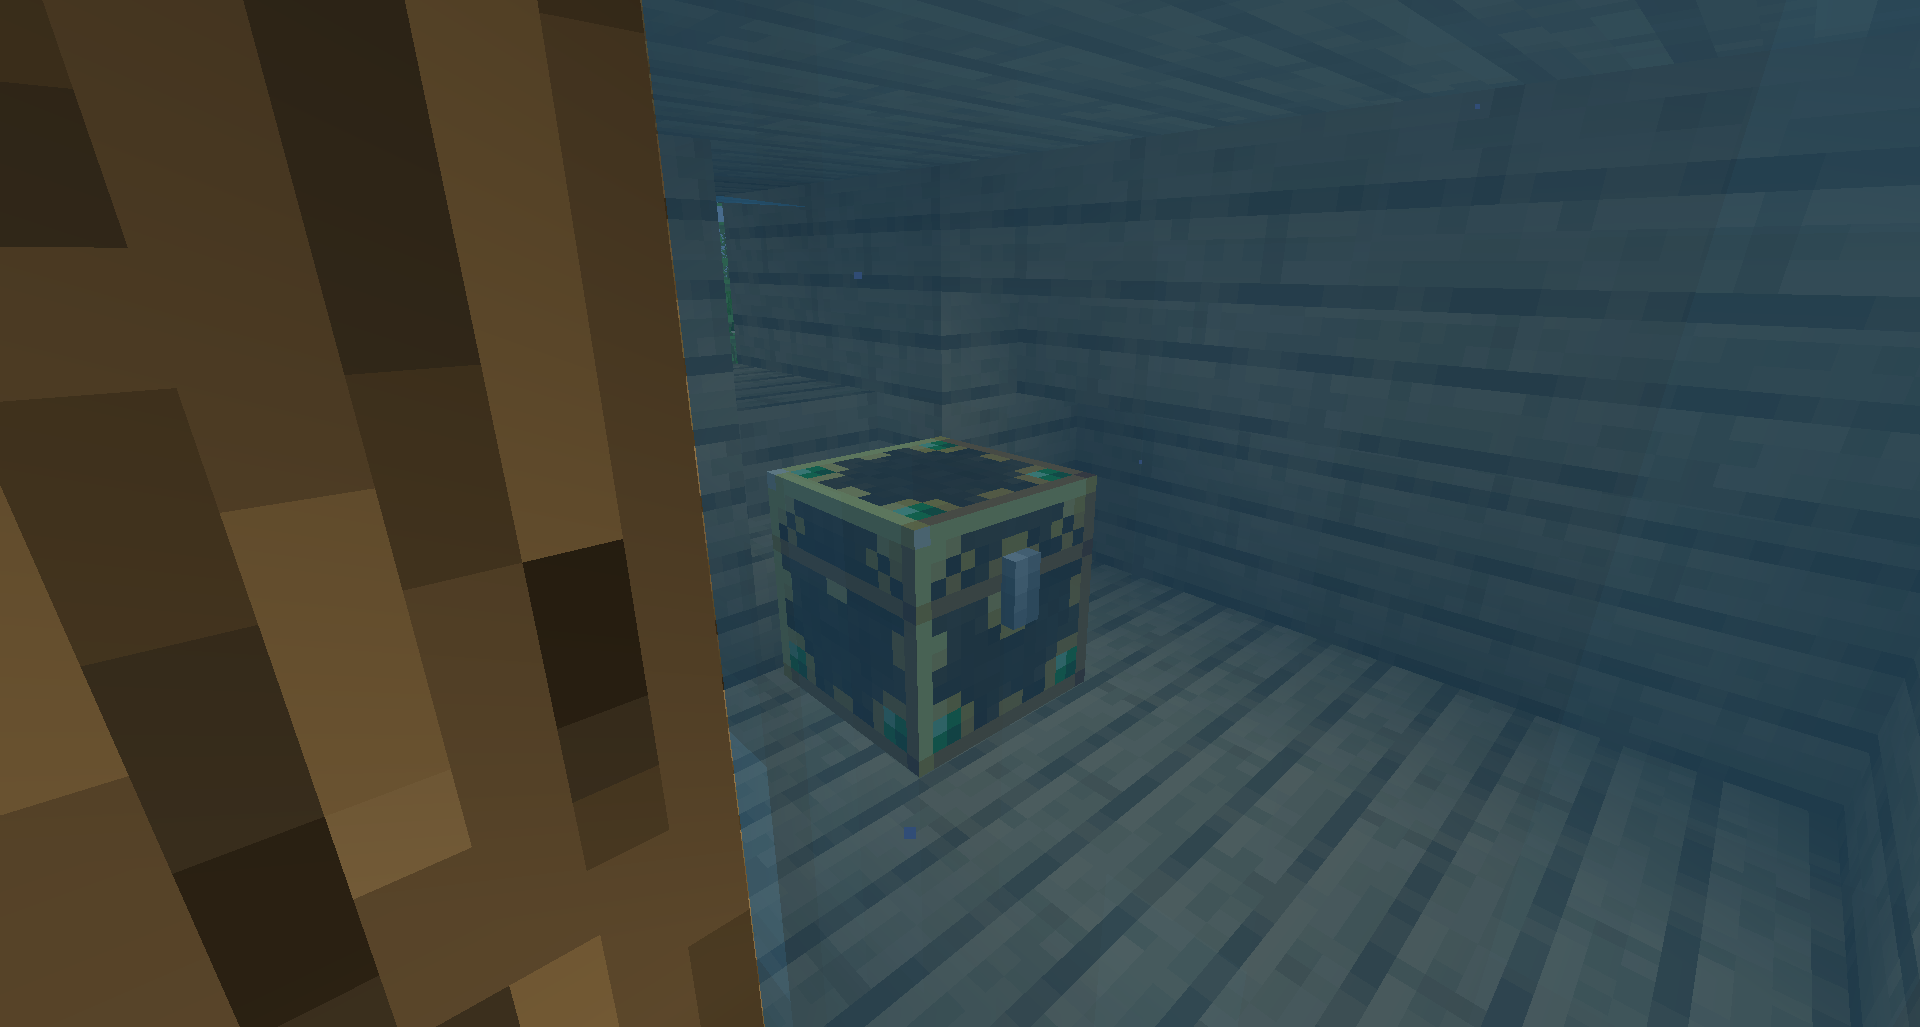 An underwater underwater Lootr chest!